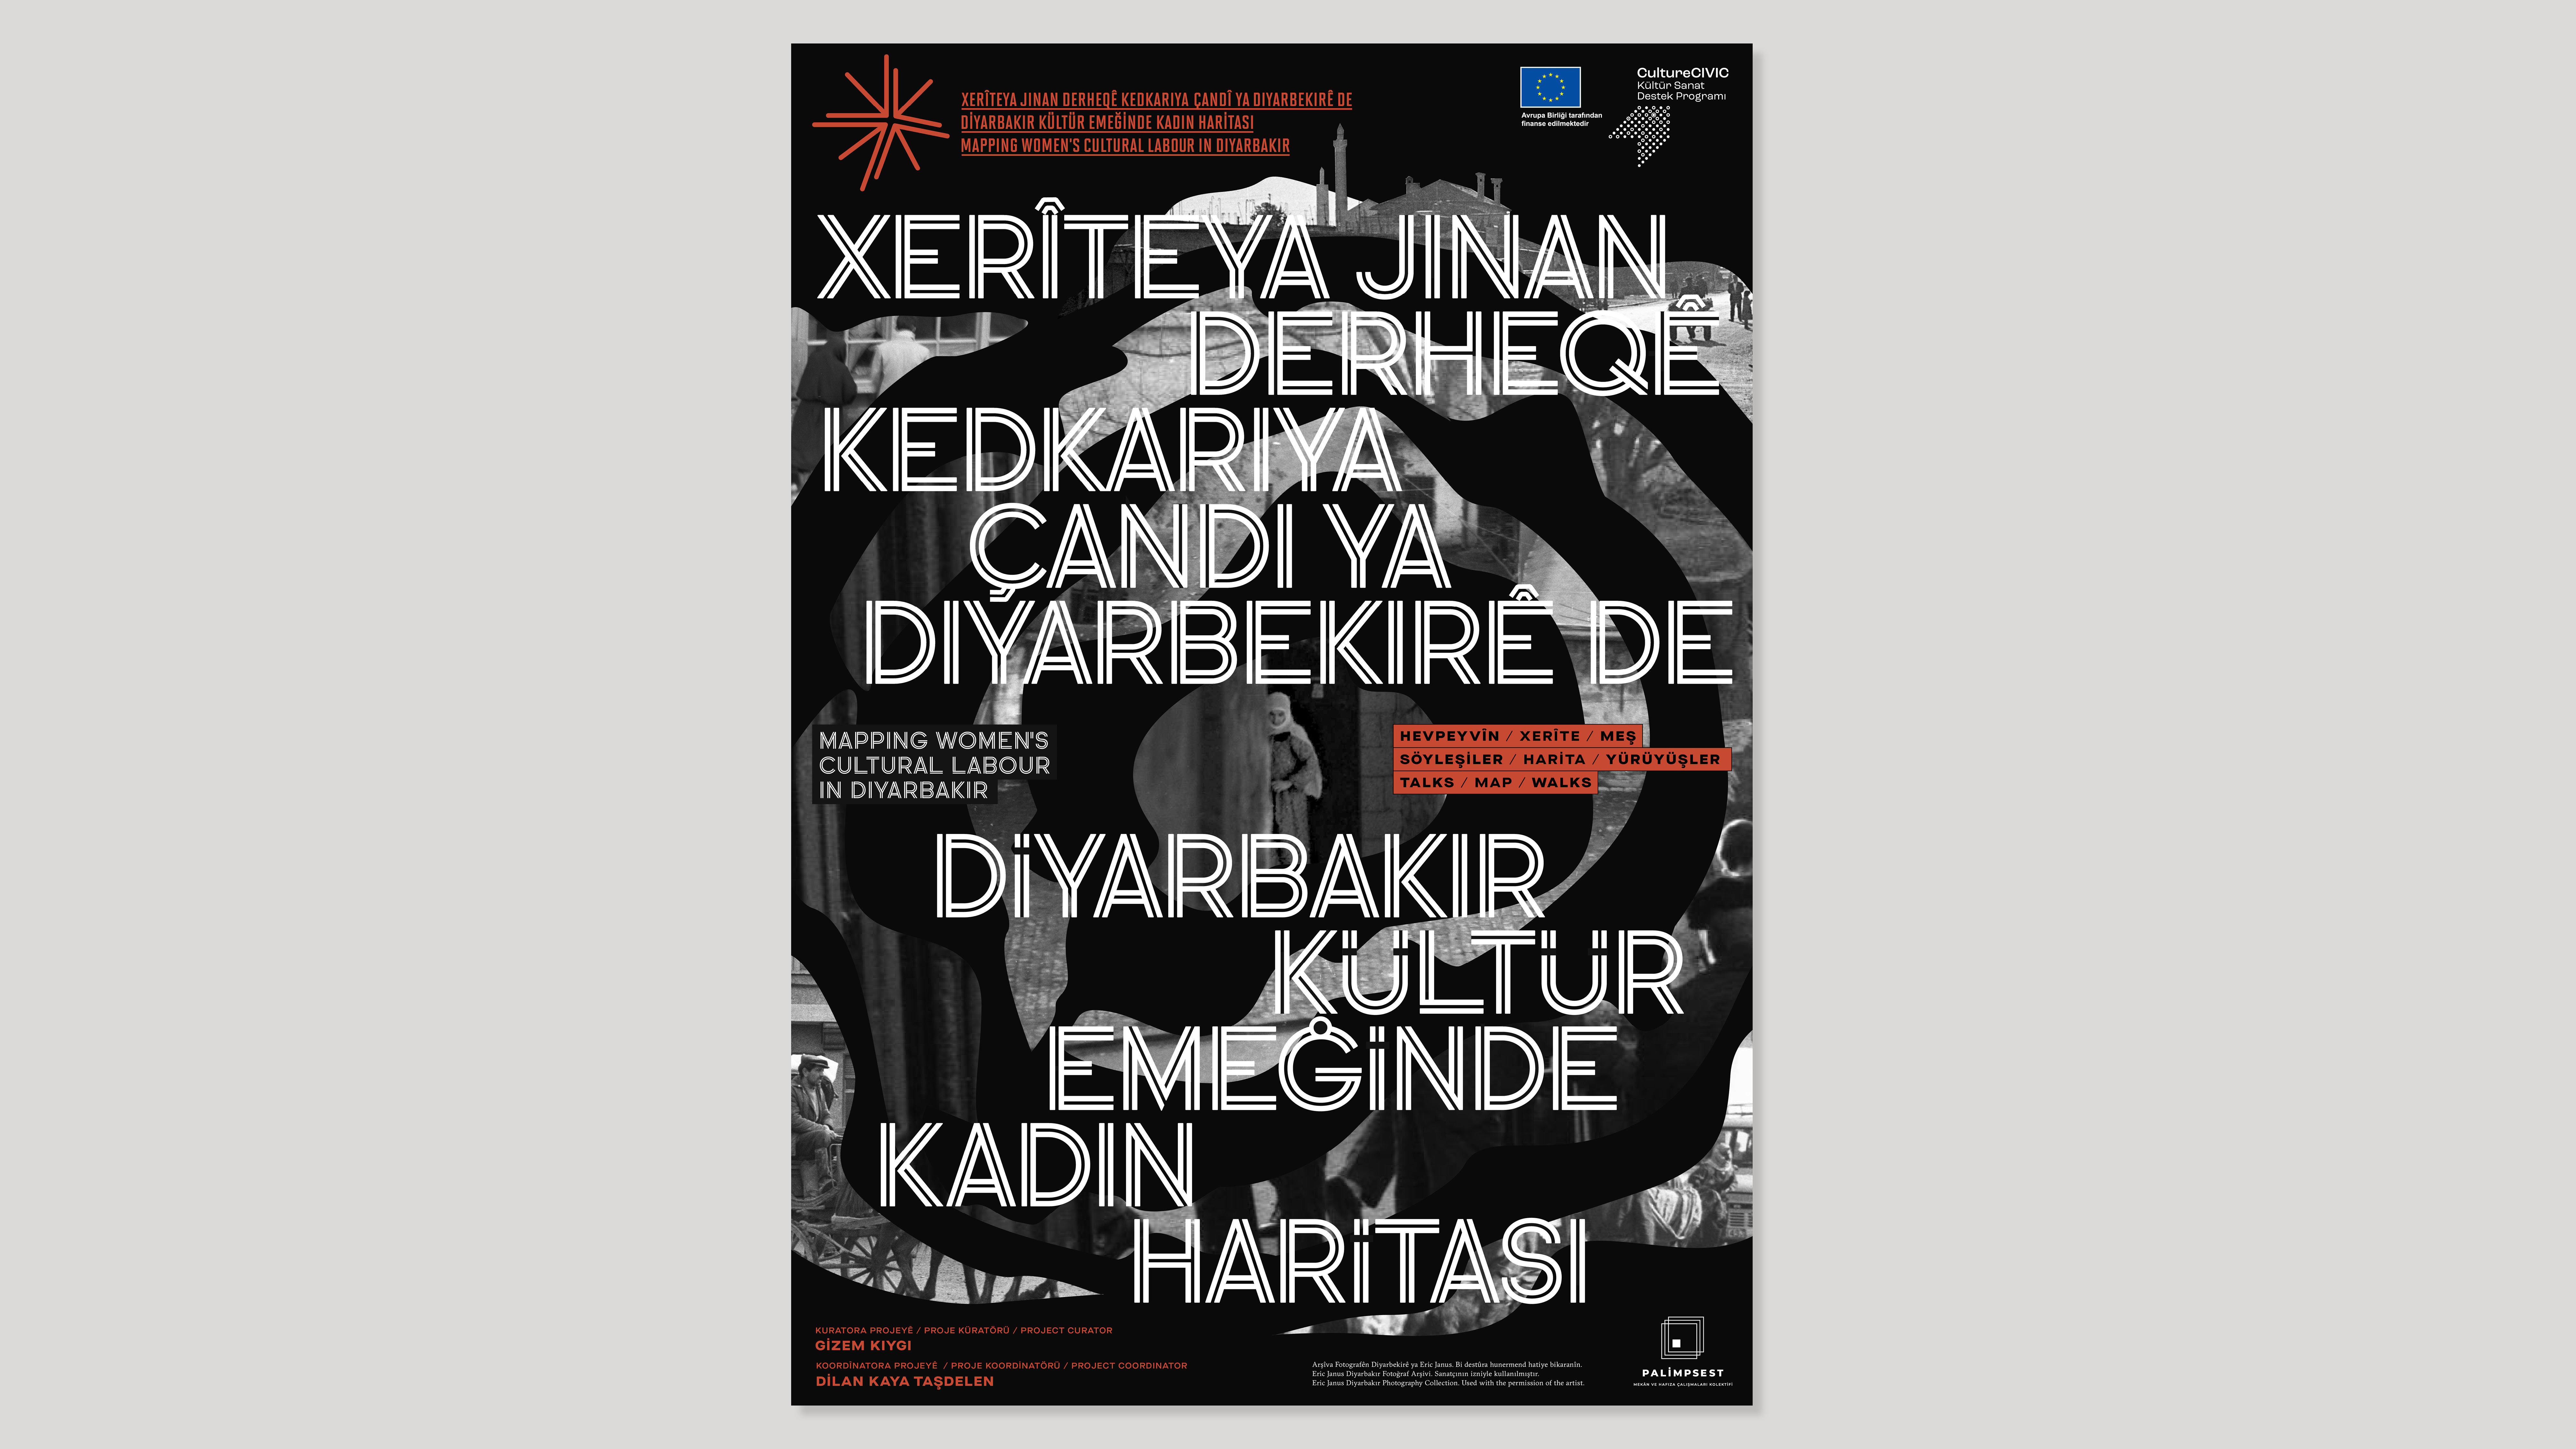 Diyarbakır Kültür Emeğinde Kadın Haritasi_1920x1080